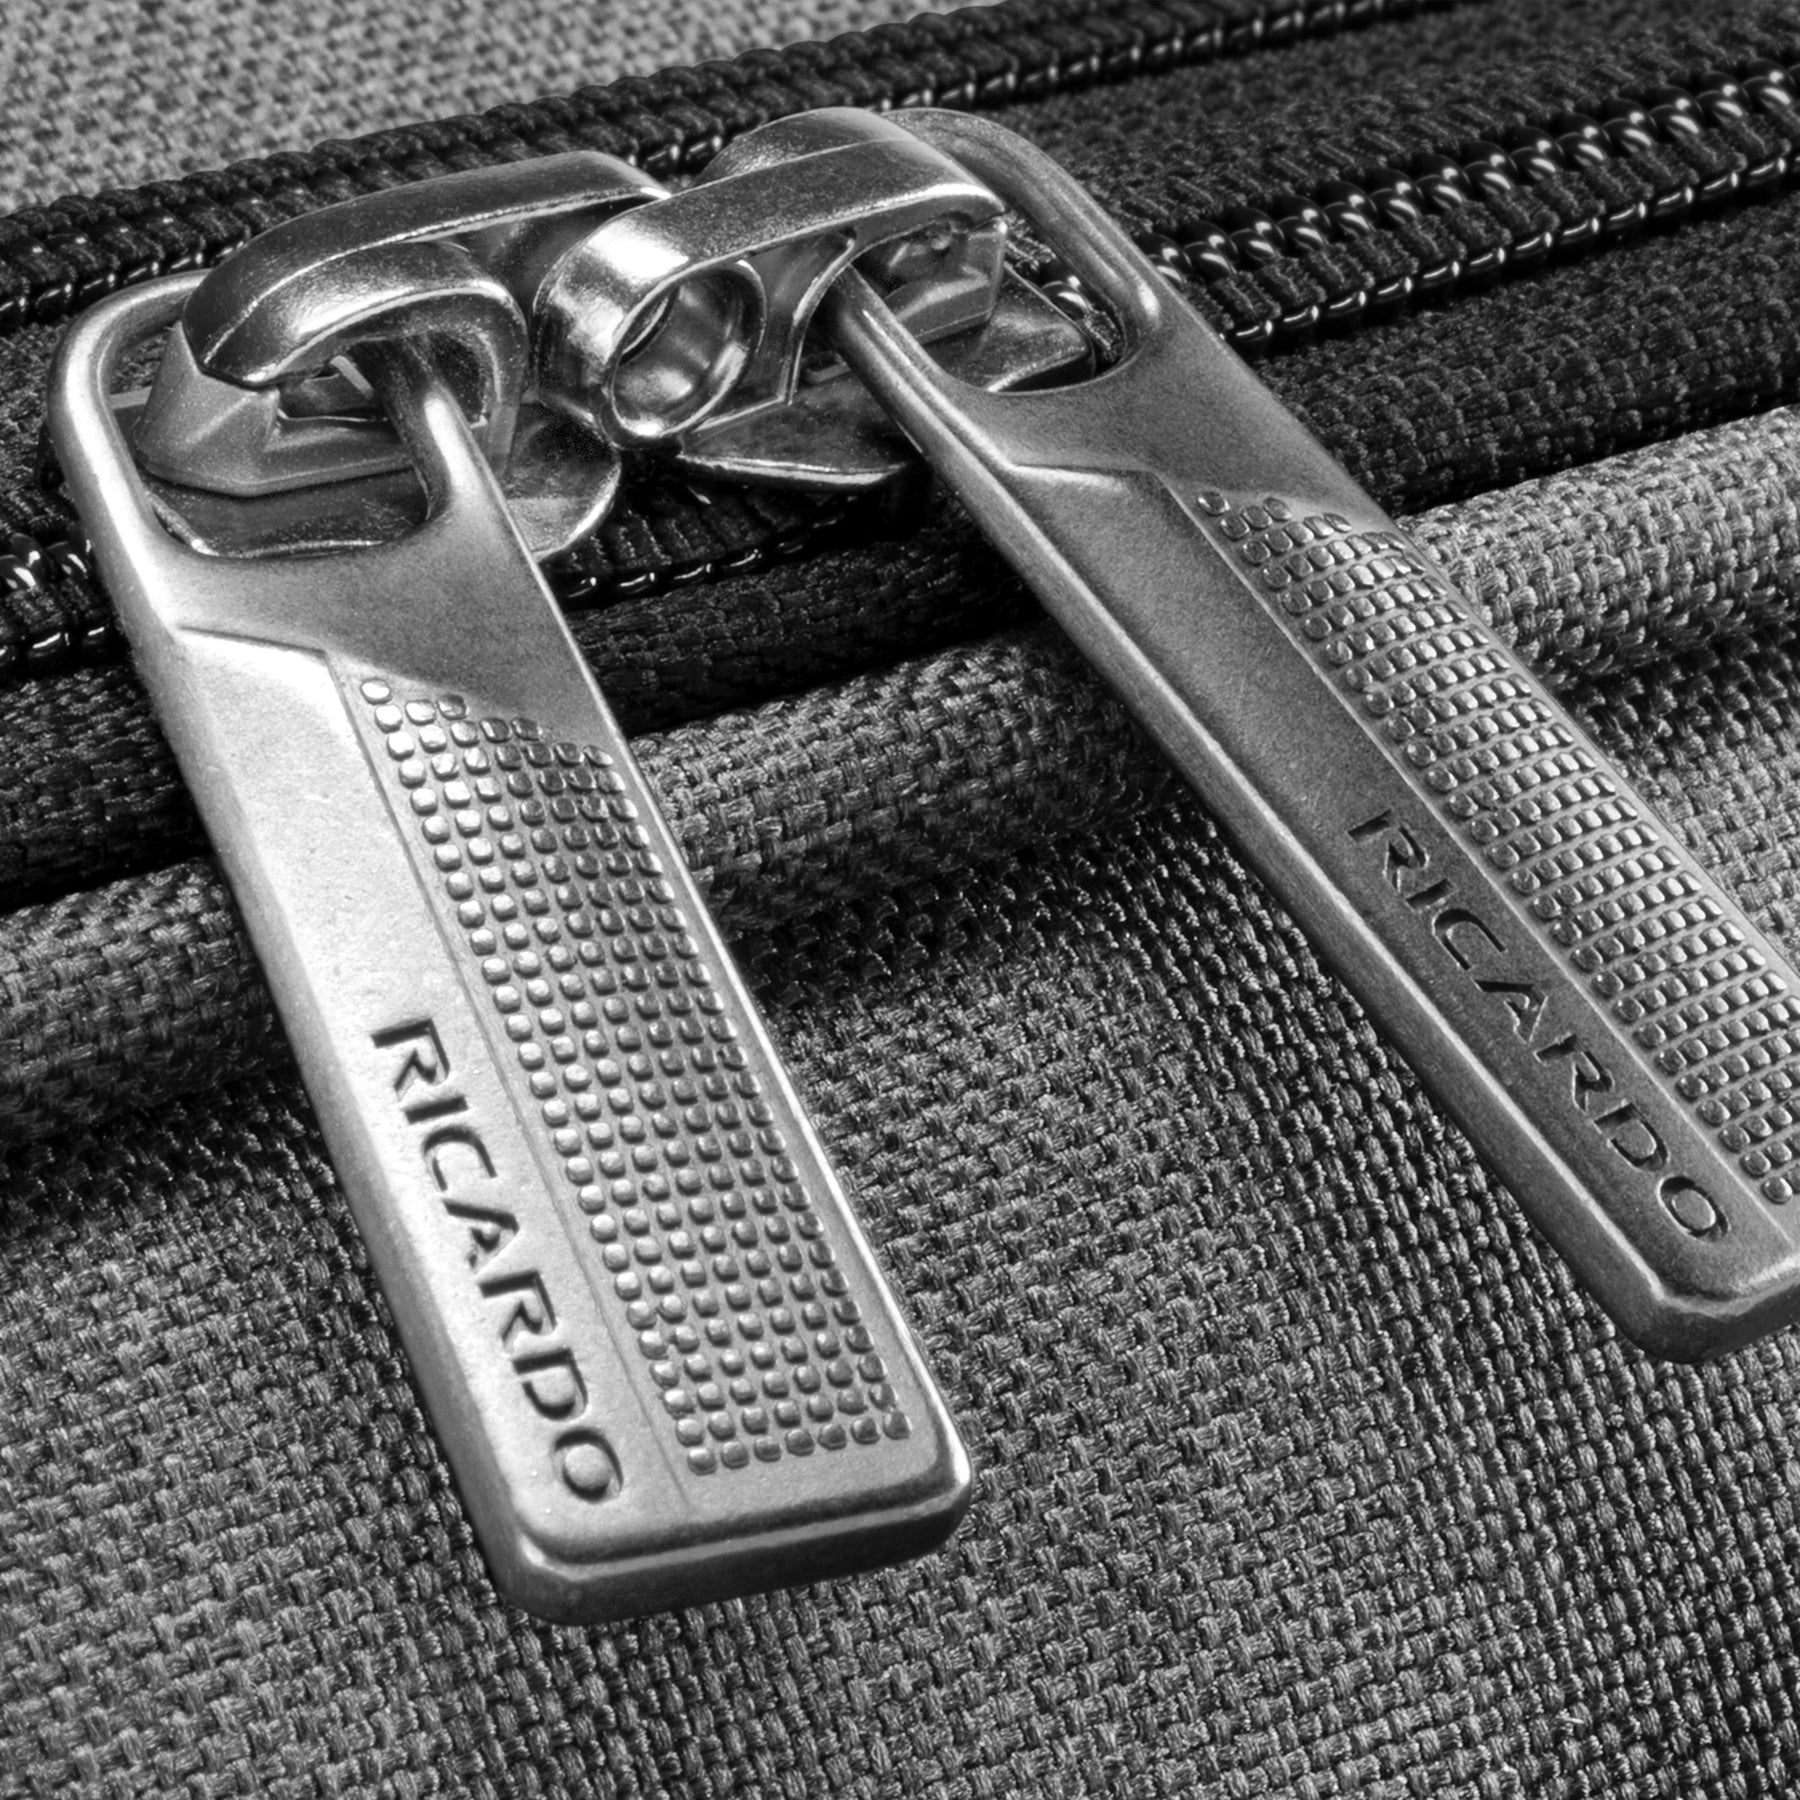 Malibu Bay 3.0 Softside Carry-On Suitcase